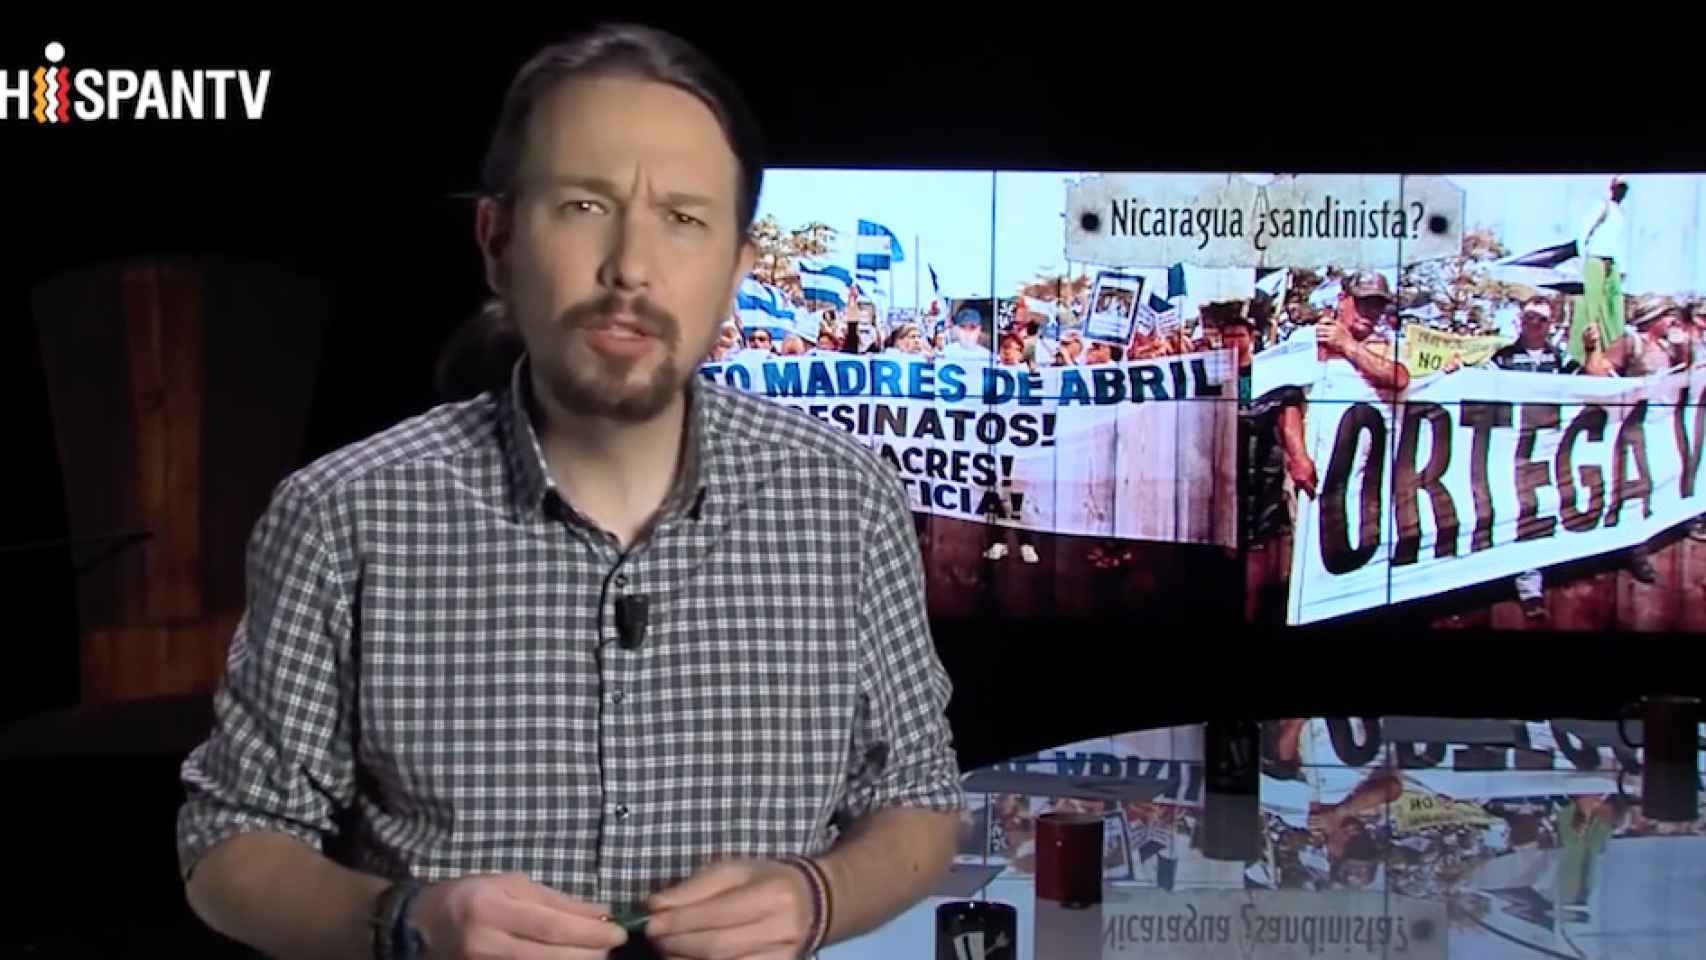 Una captura de pantalla de uno de los vídeos promocionales del programa Fort Apache sobre Nicaragua televisión pablo iglesias